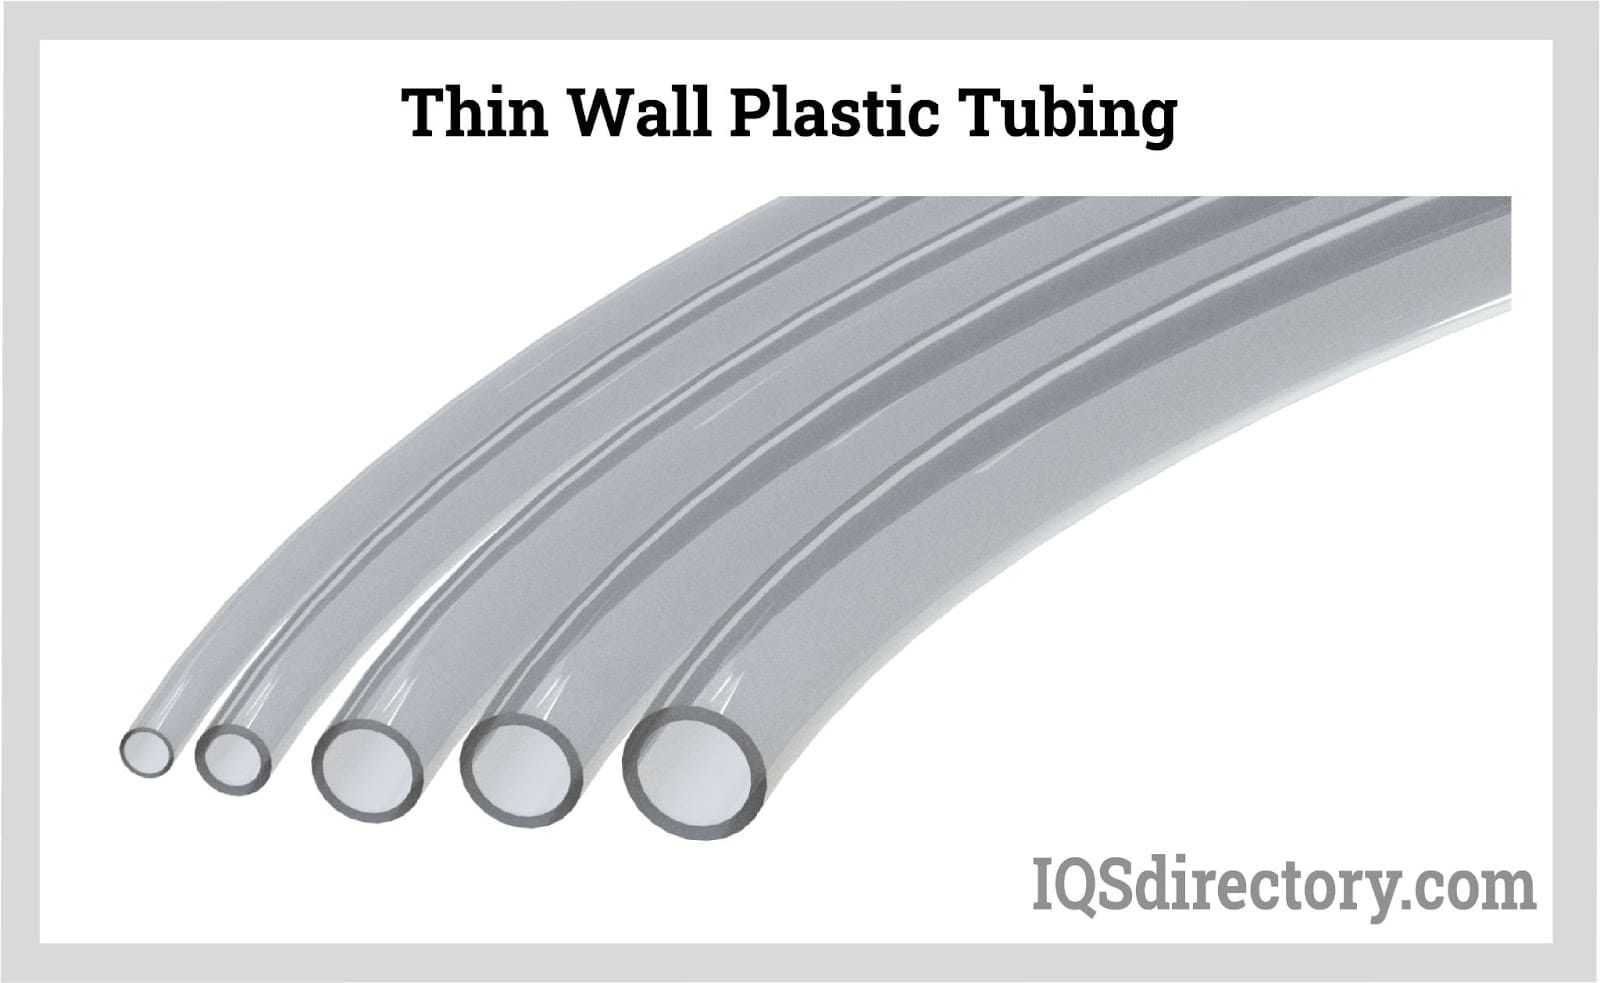 Thin Wall Plastic Tubing